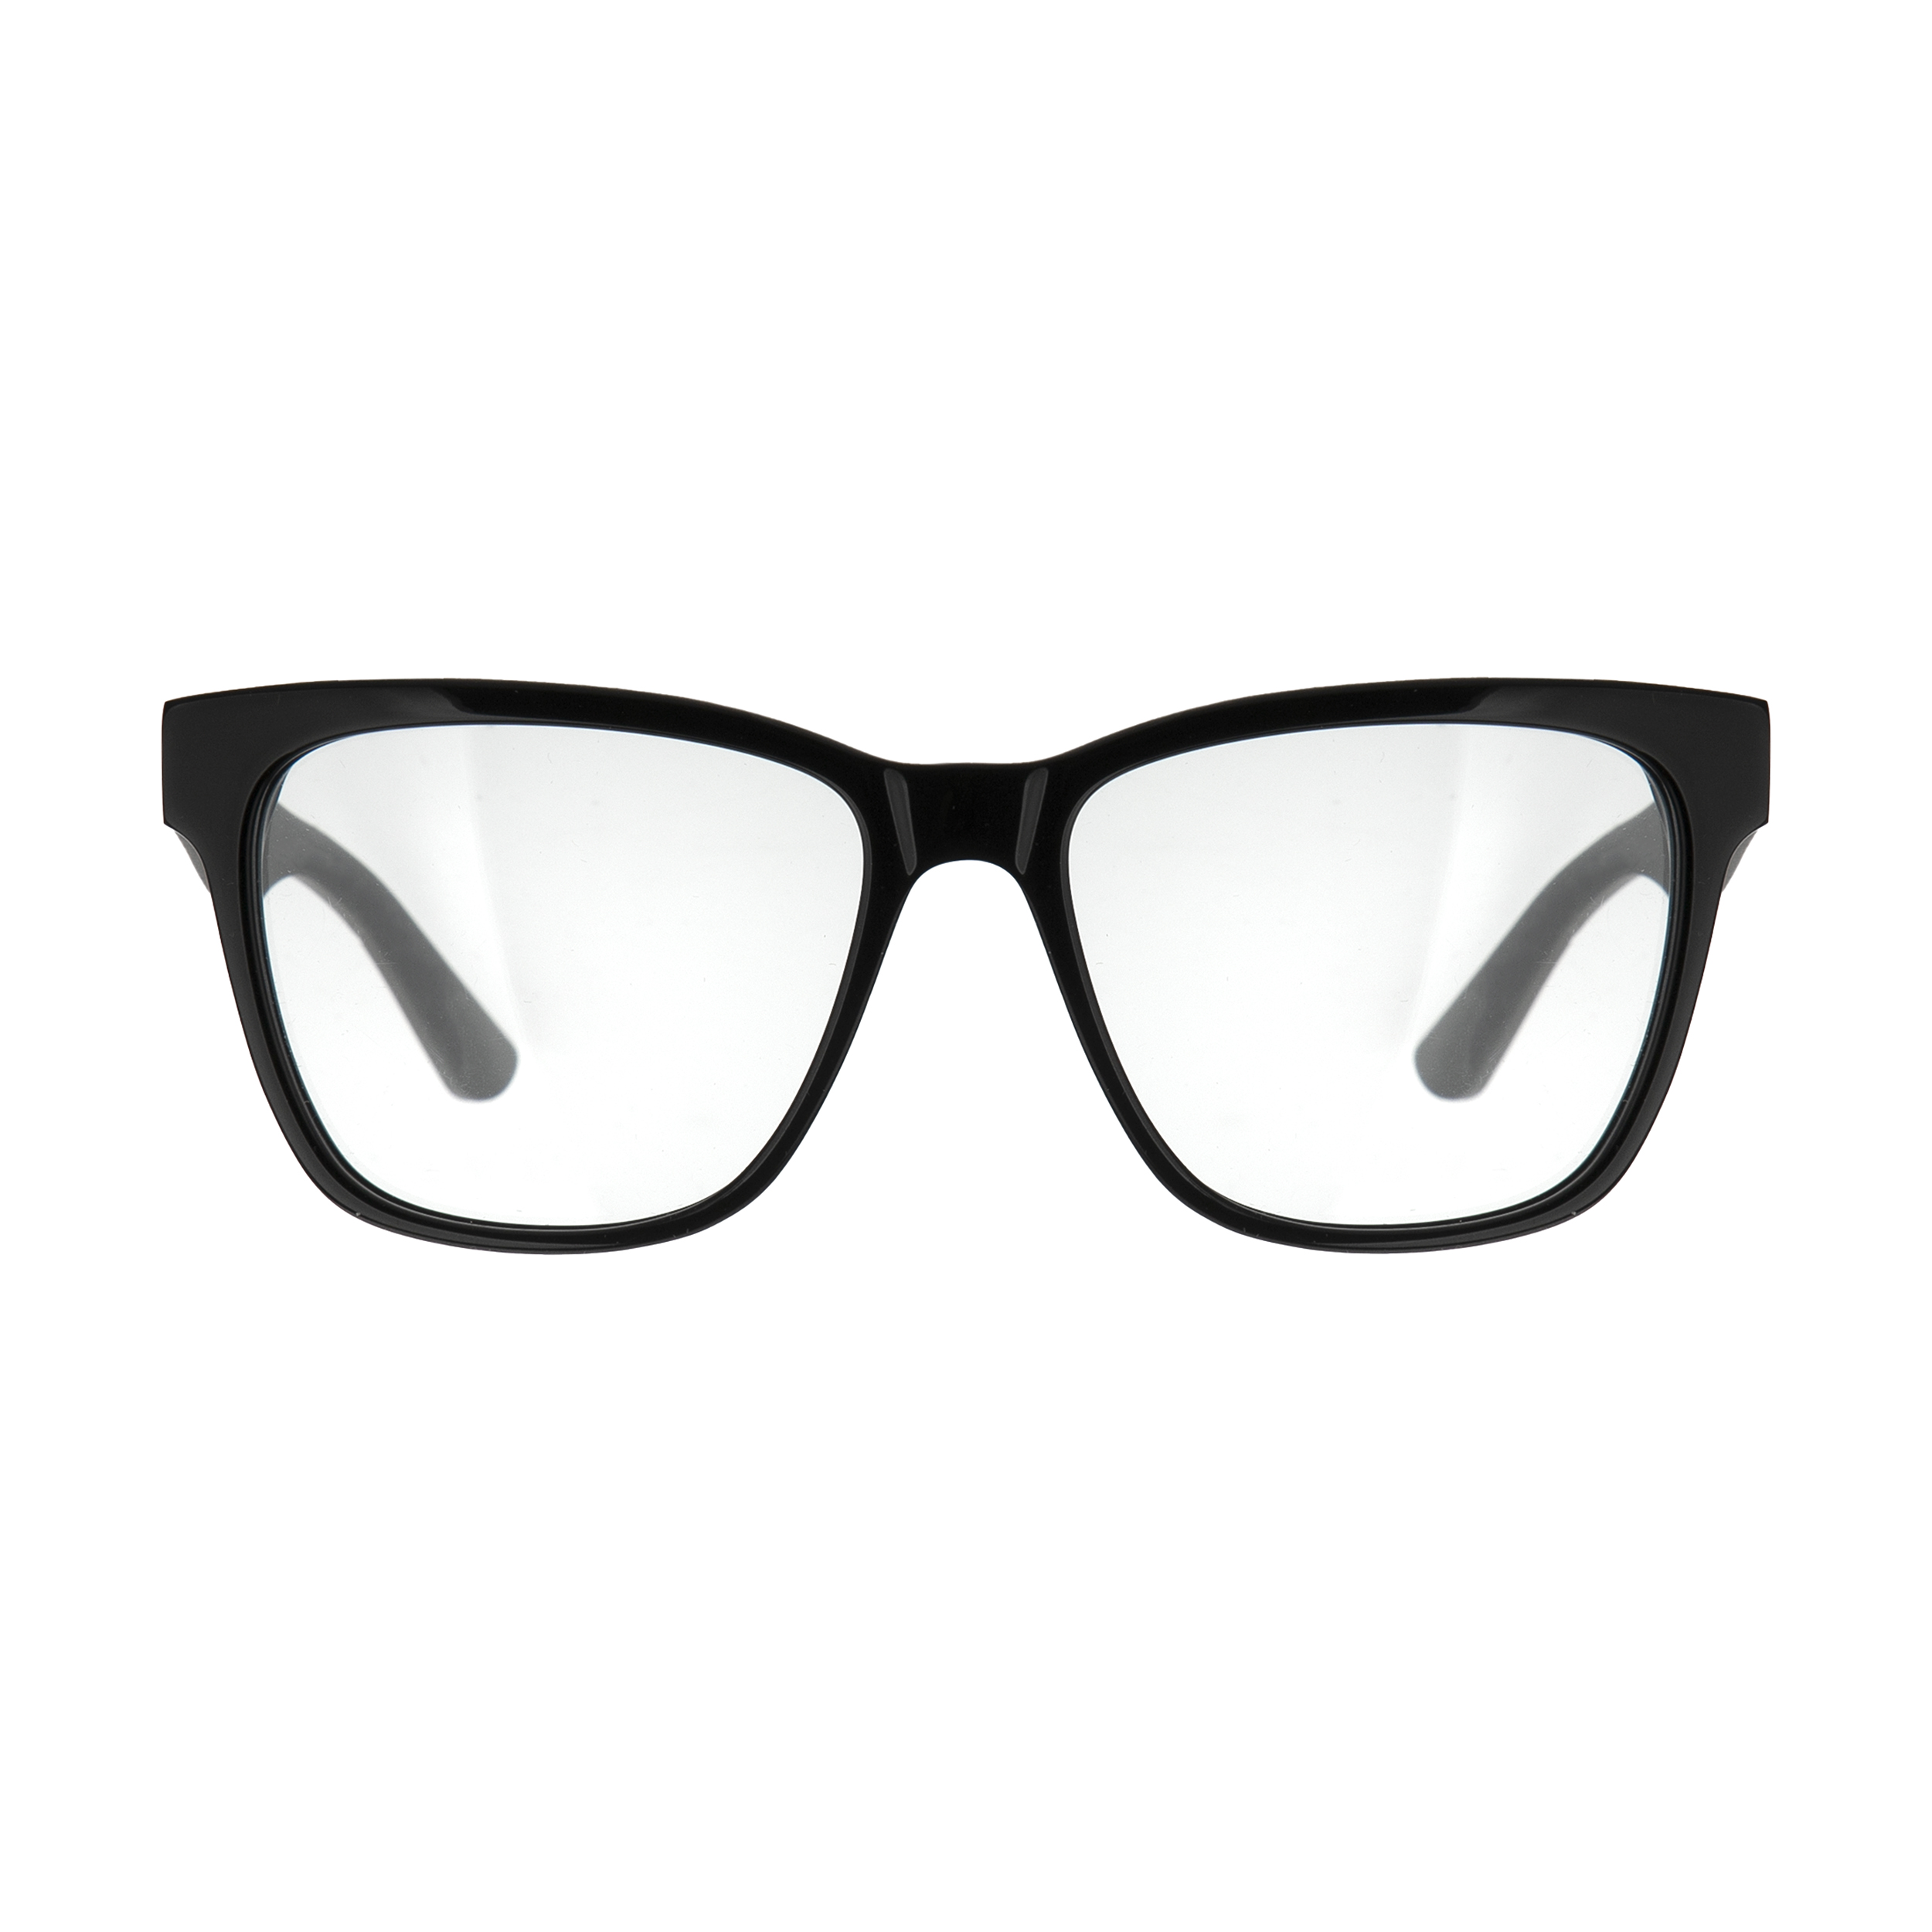 فریم عینک طبی کارل لاگرفلد مدل KL918V1